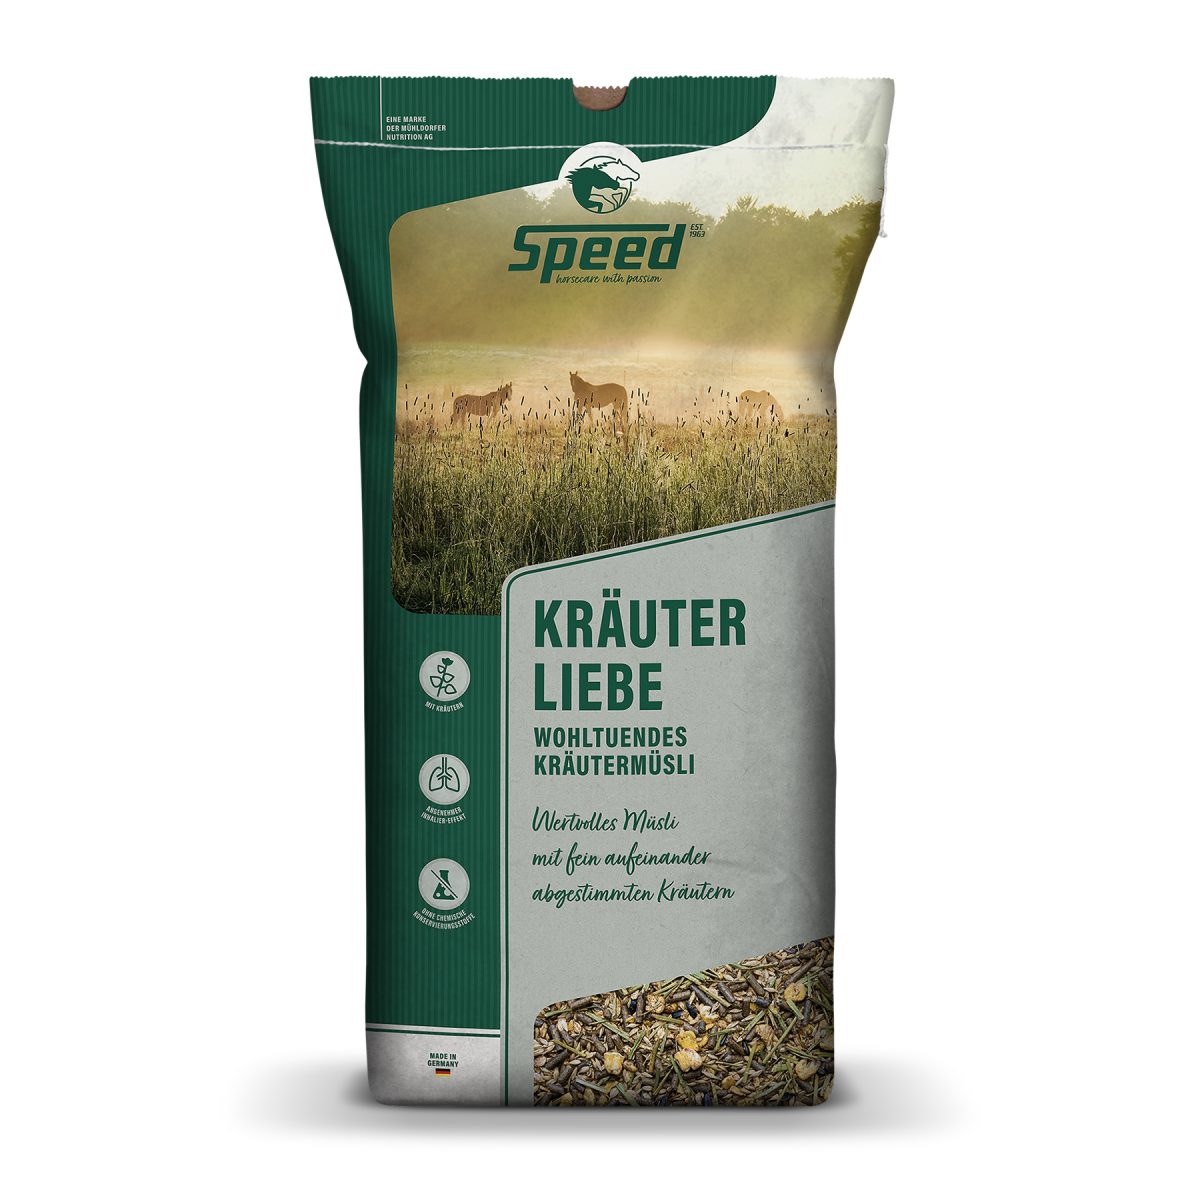 SPEED Kräuter Liebe - 20 Kilogramm